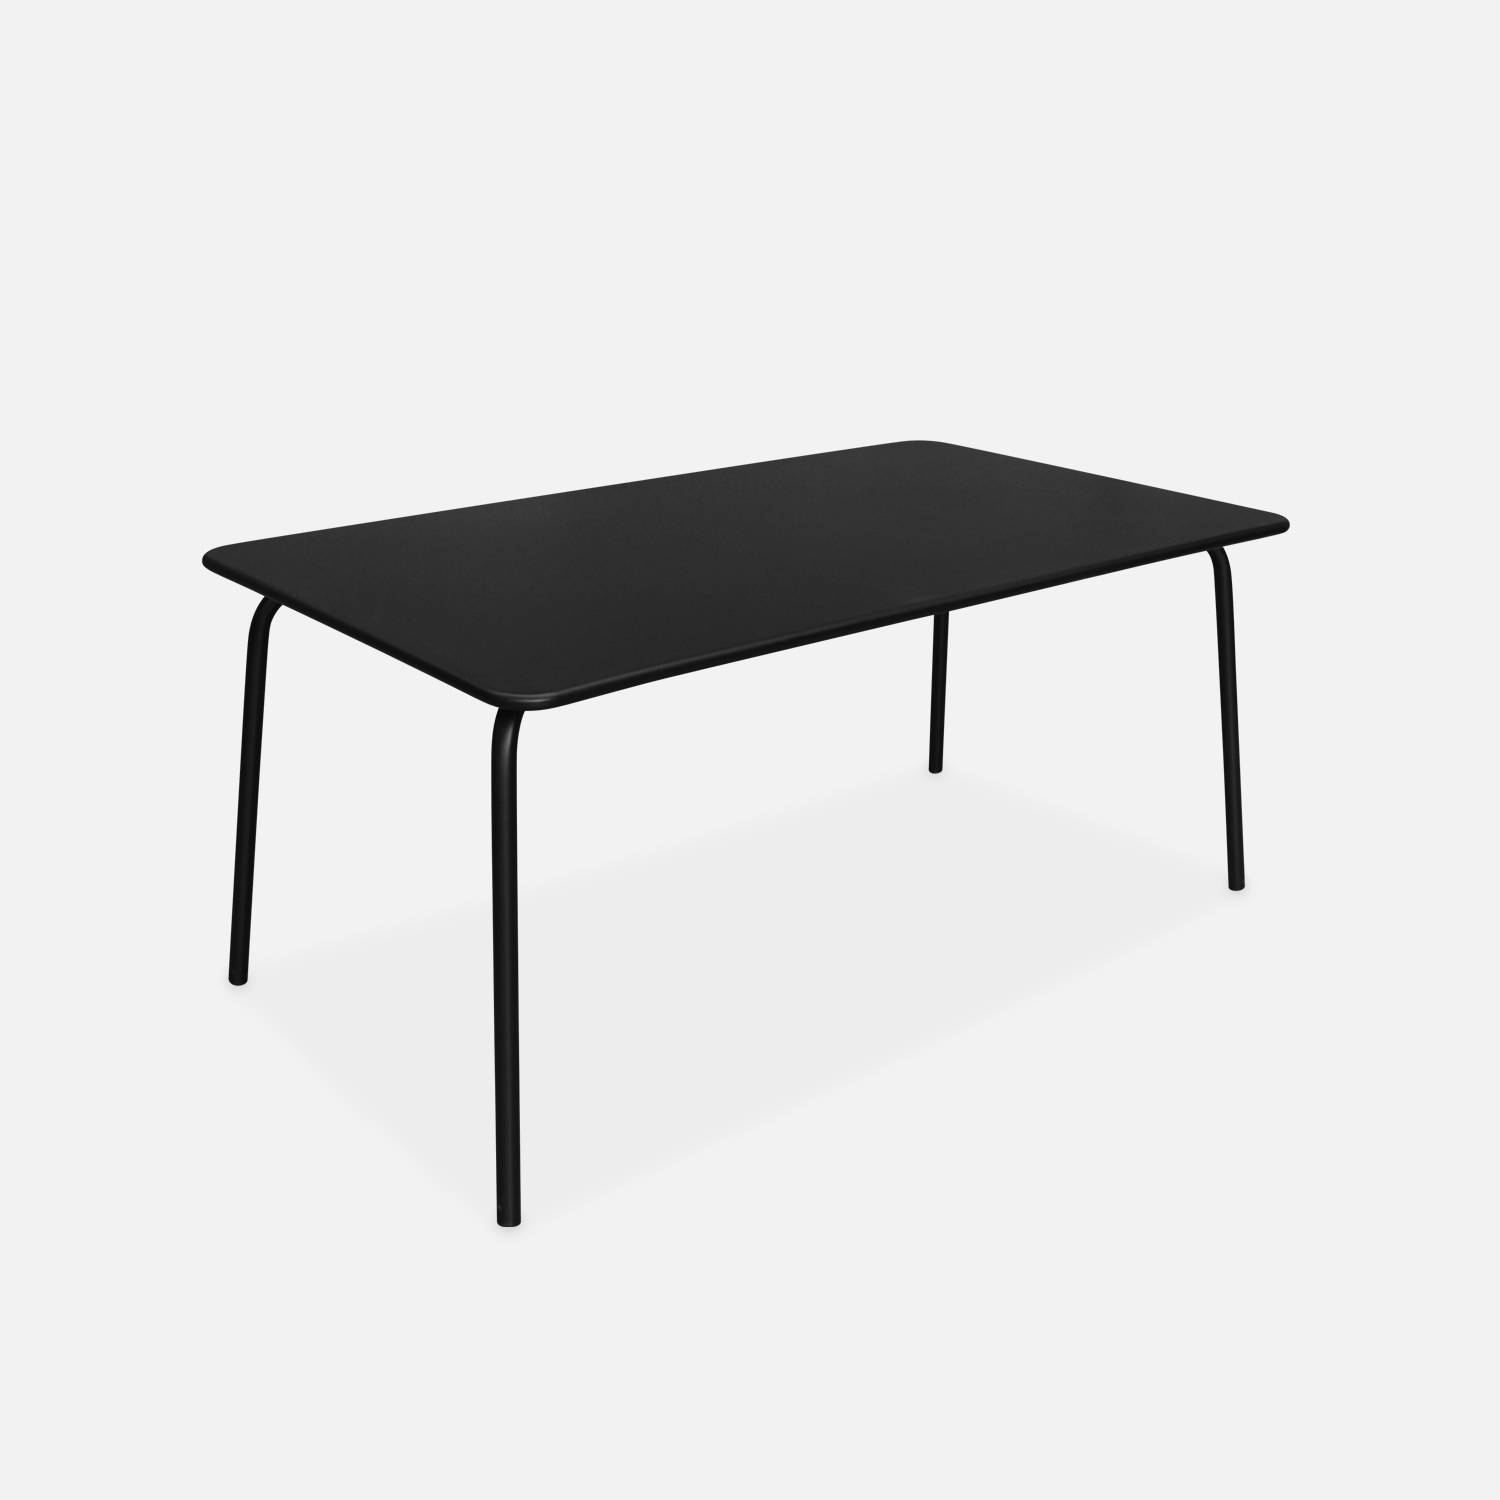 Gartentisch aus Metall 160x90cm, schwarz l sweeek